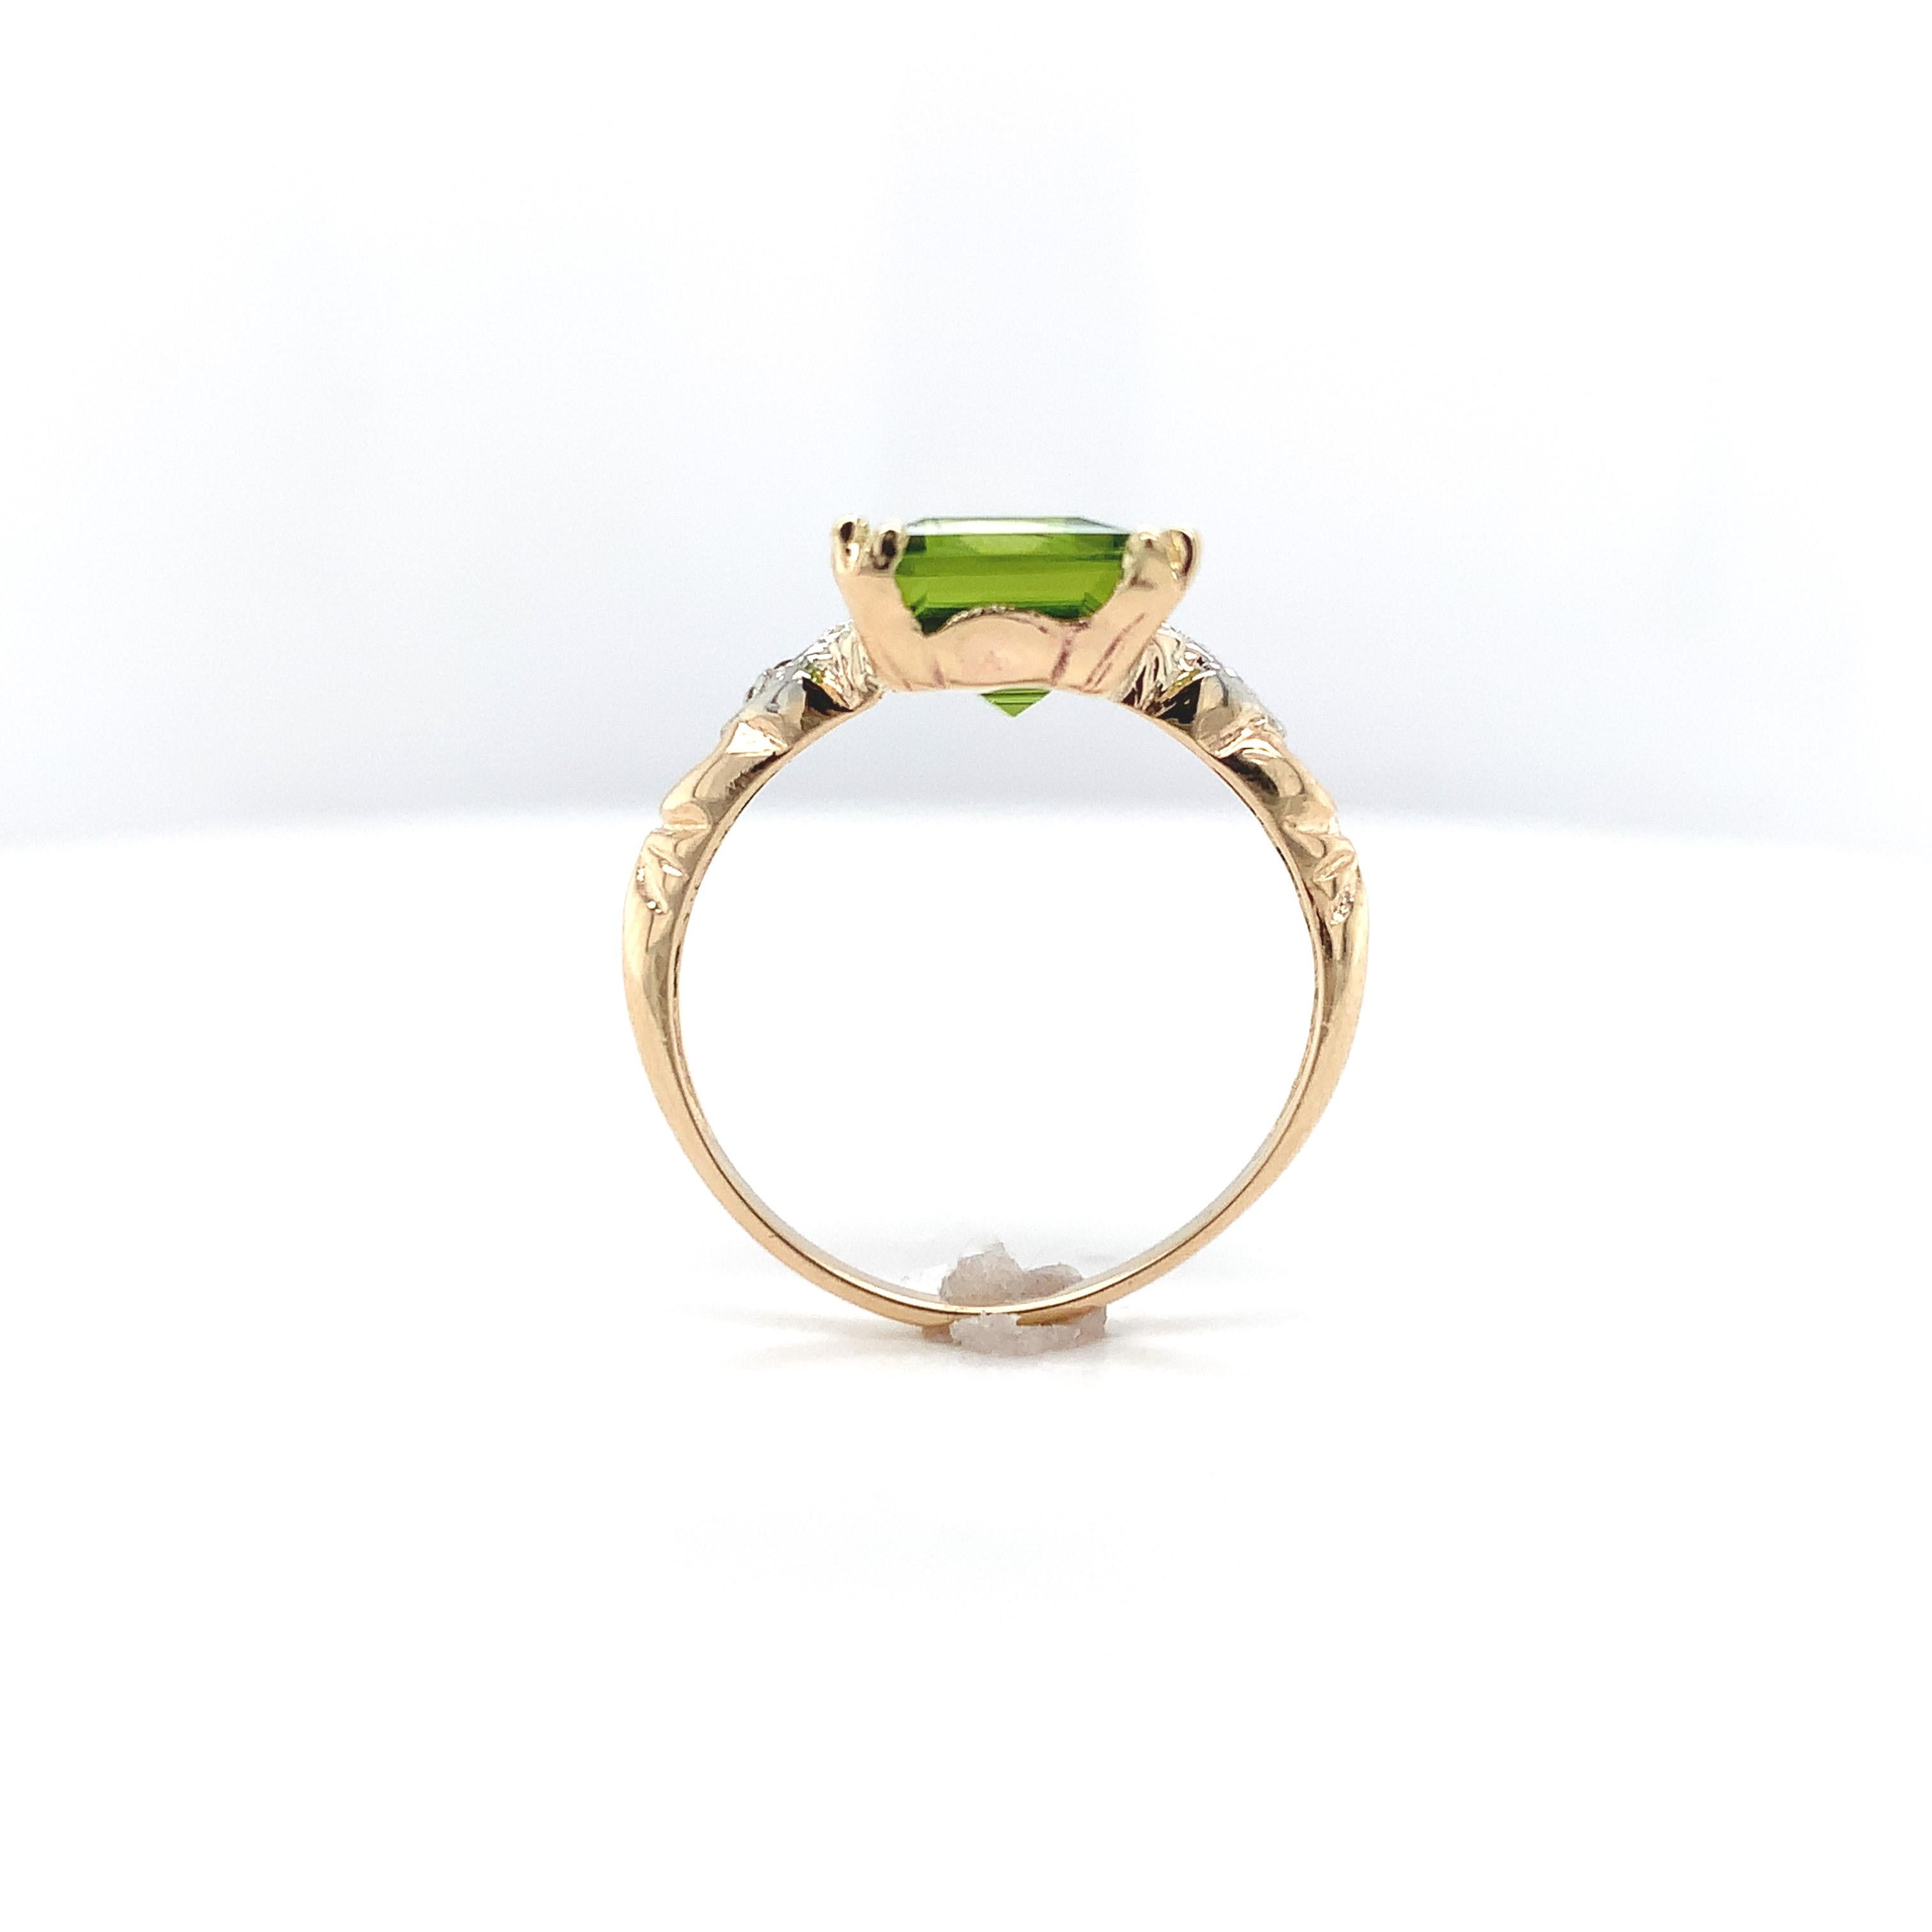 Ring aus 10 Karat Gelbgold mit einem Peridot im Smaragdschliff von 3,48 Karat. Der leuchtend lindgrüne Peridot misst etwa 10 mm x 8 mm. 2 winzige Diamanten im Rosen-/Polkischliff sind in Weißgold gefasst. Der Ring passt auf einen Finger der Größe